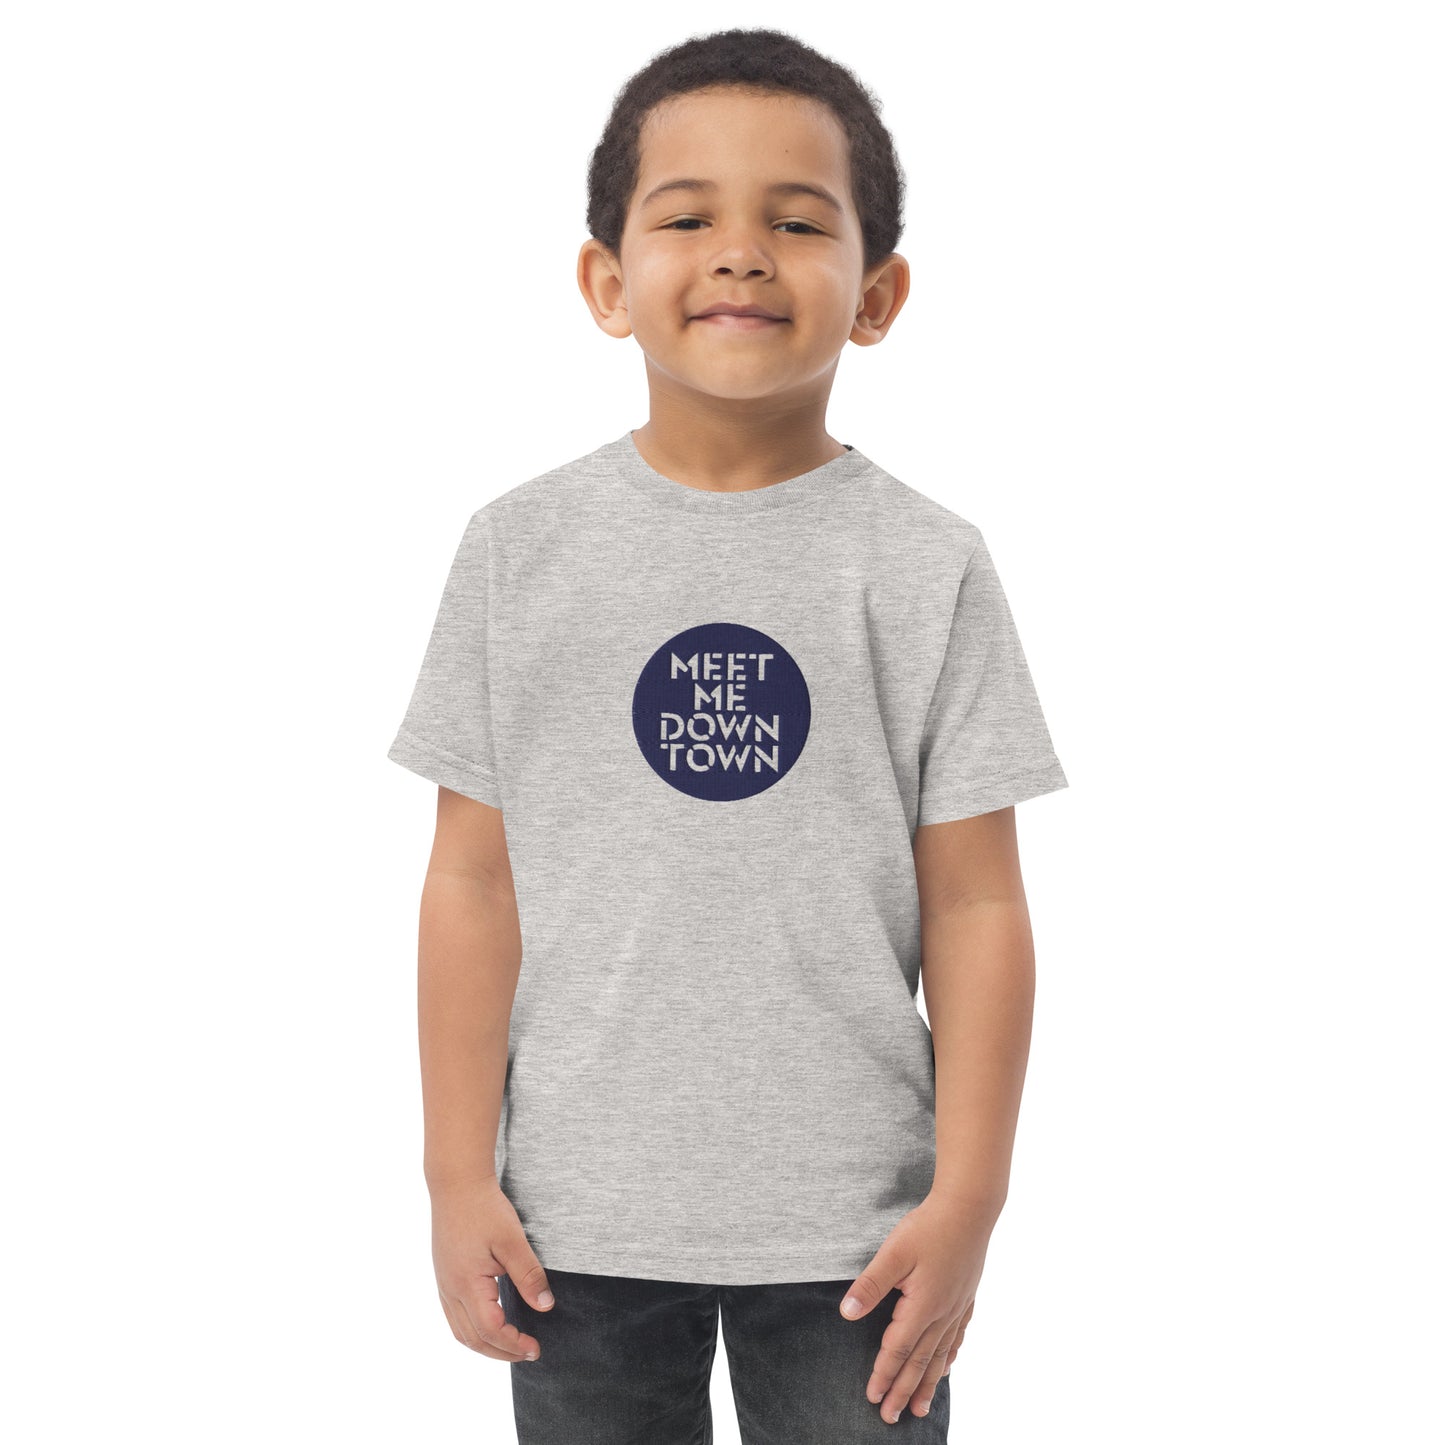 "Meet Me Downtown" Toddler/Kids Jersey T-shirt